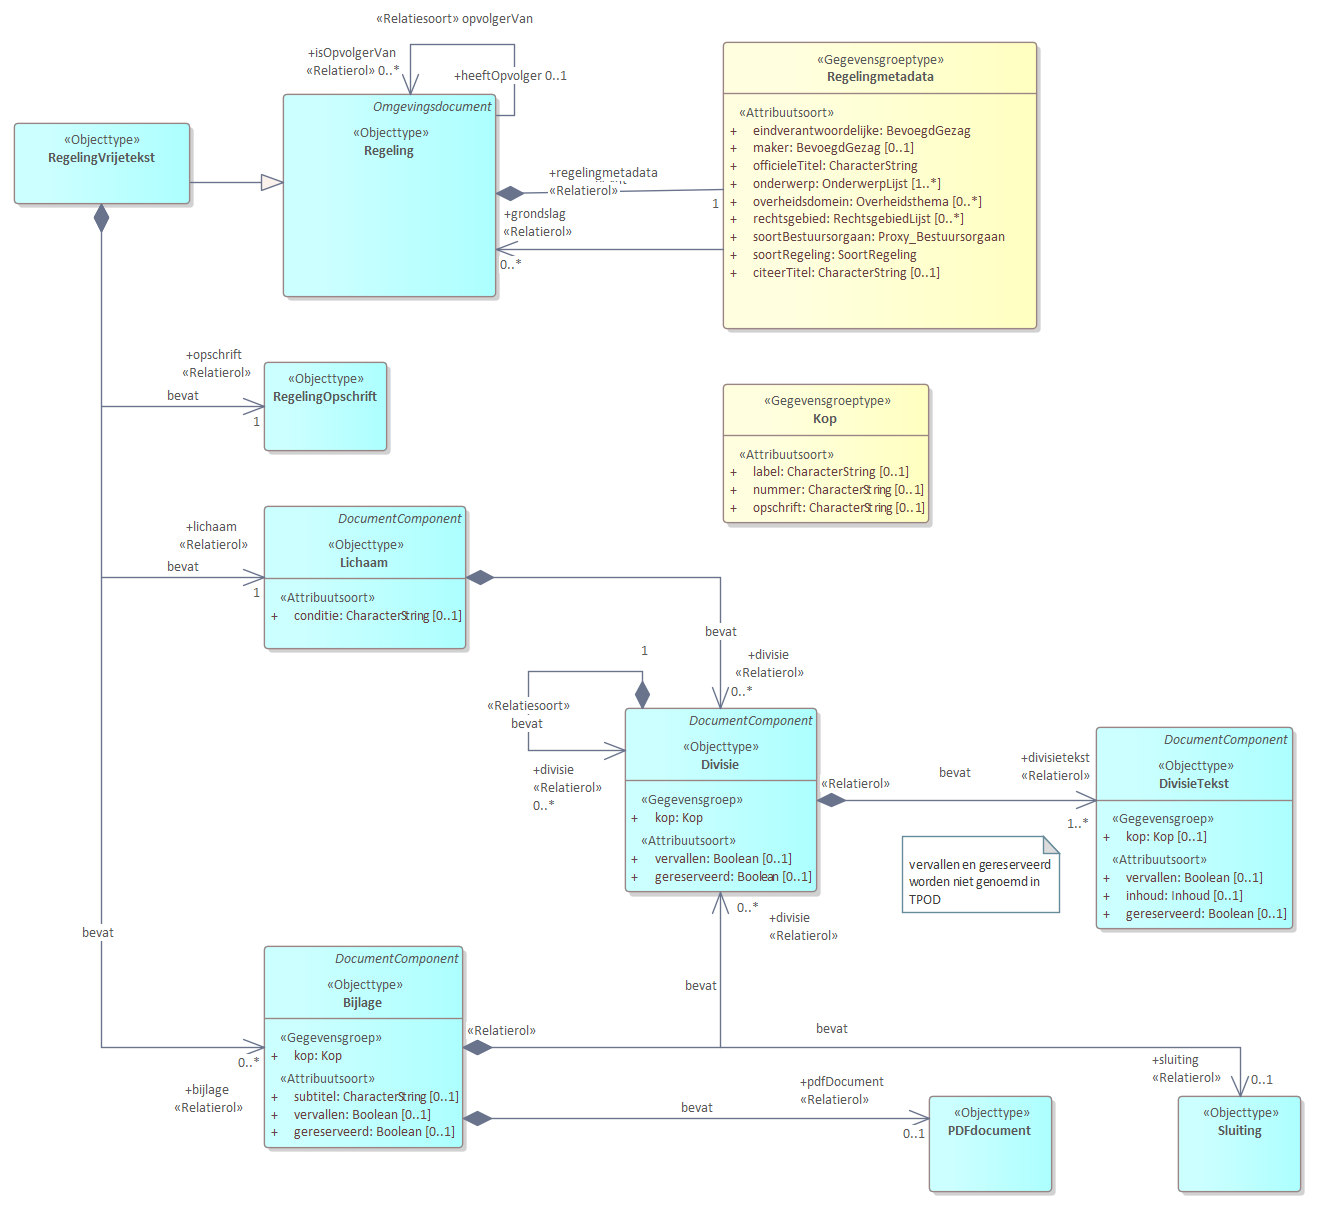 Diagram 
                        UML diagram voor RegelingVrijetekst.
                        Model voor regelingen met een vrije tekst structuur.
                        
                        Een RegelingVrijetekst bevat de volgende basisonderdelen:
                        
                        
                           Regelingmetadata bevat de gegevens over een regeling zoals titel en maker.
                           Opschrift
                           Lichaam
                           Divisie
                           DivisieTekst
                           Bijlage
                        
                        
                        
                        De meeste van delen van de basisonderdelen zijn weer verder opgedeeld in onderdelen.
                        
                        
                           
                              
                                 Referentie naar STOP
                              
                           
                        
                     